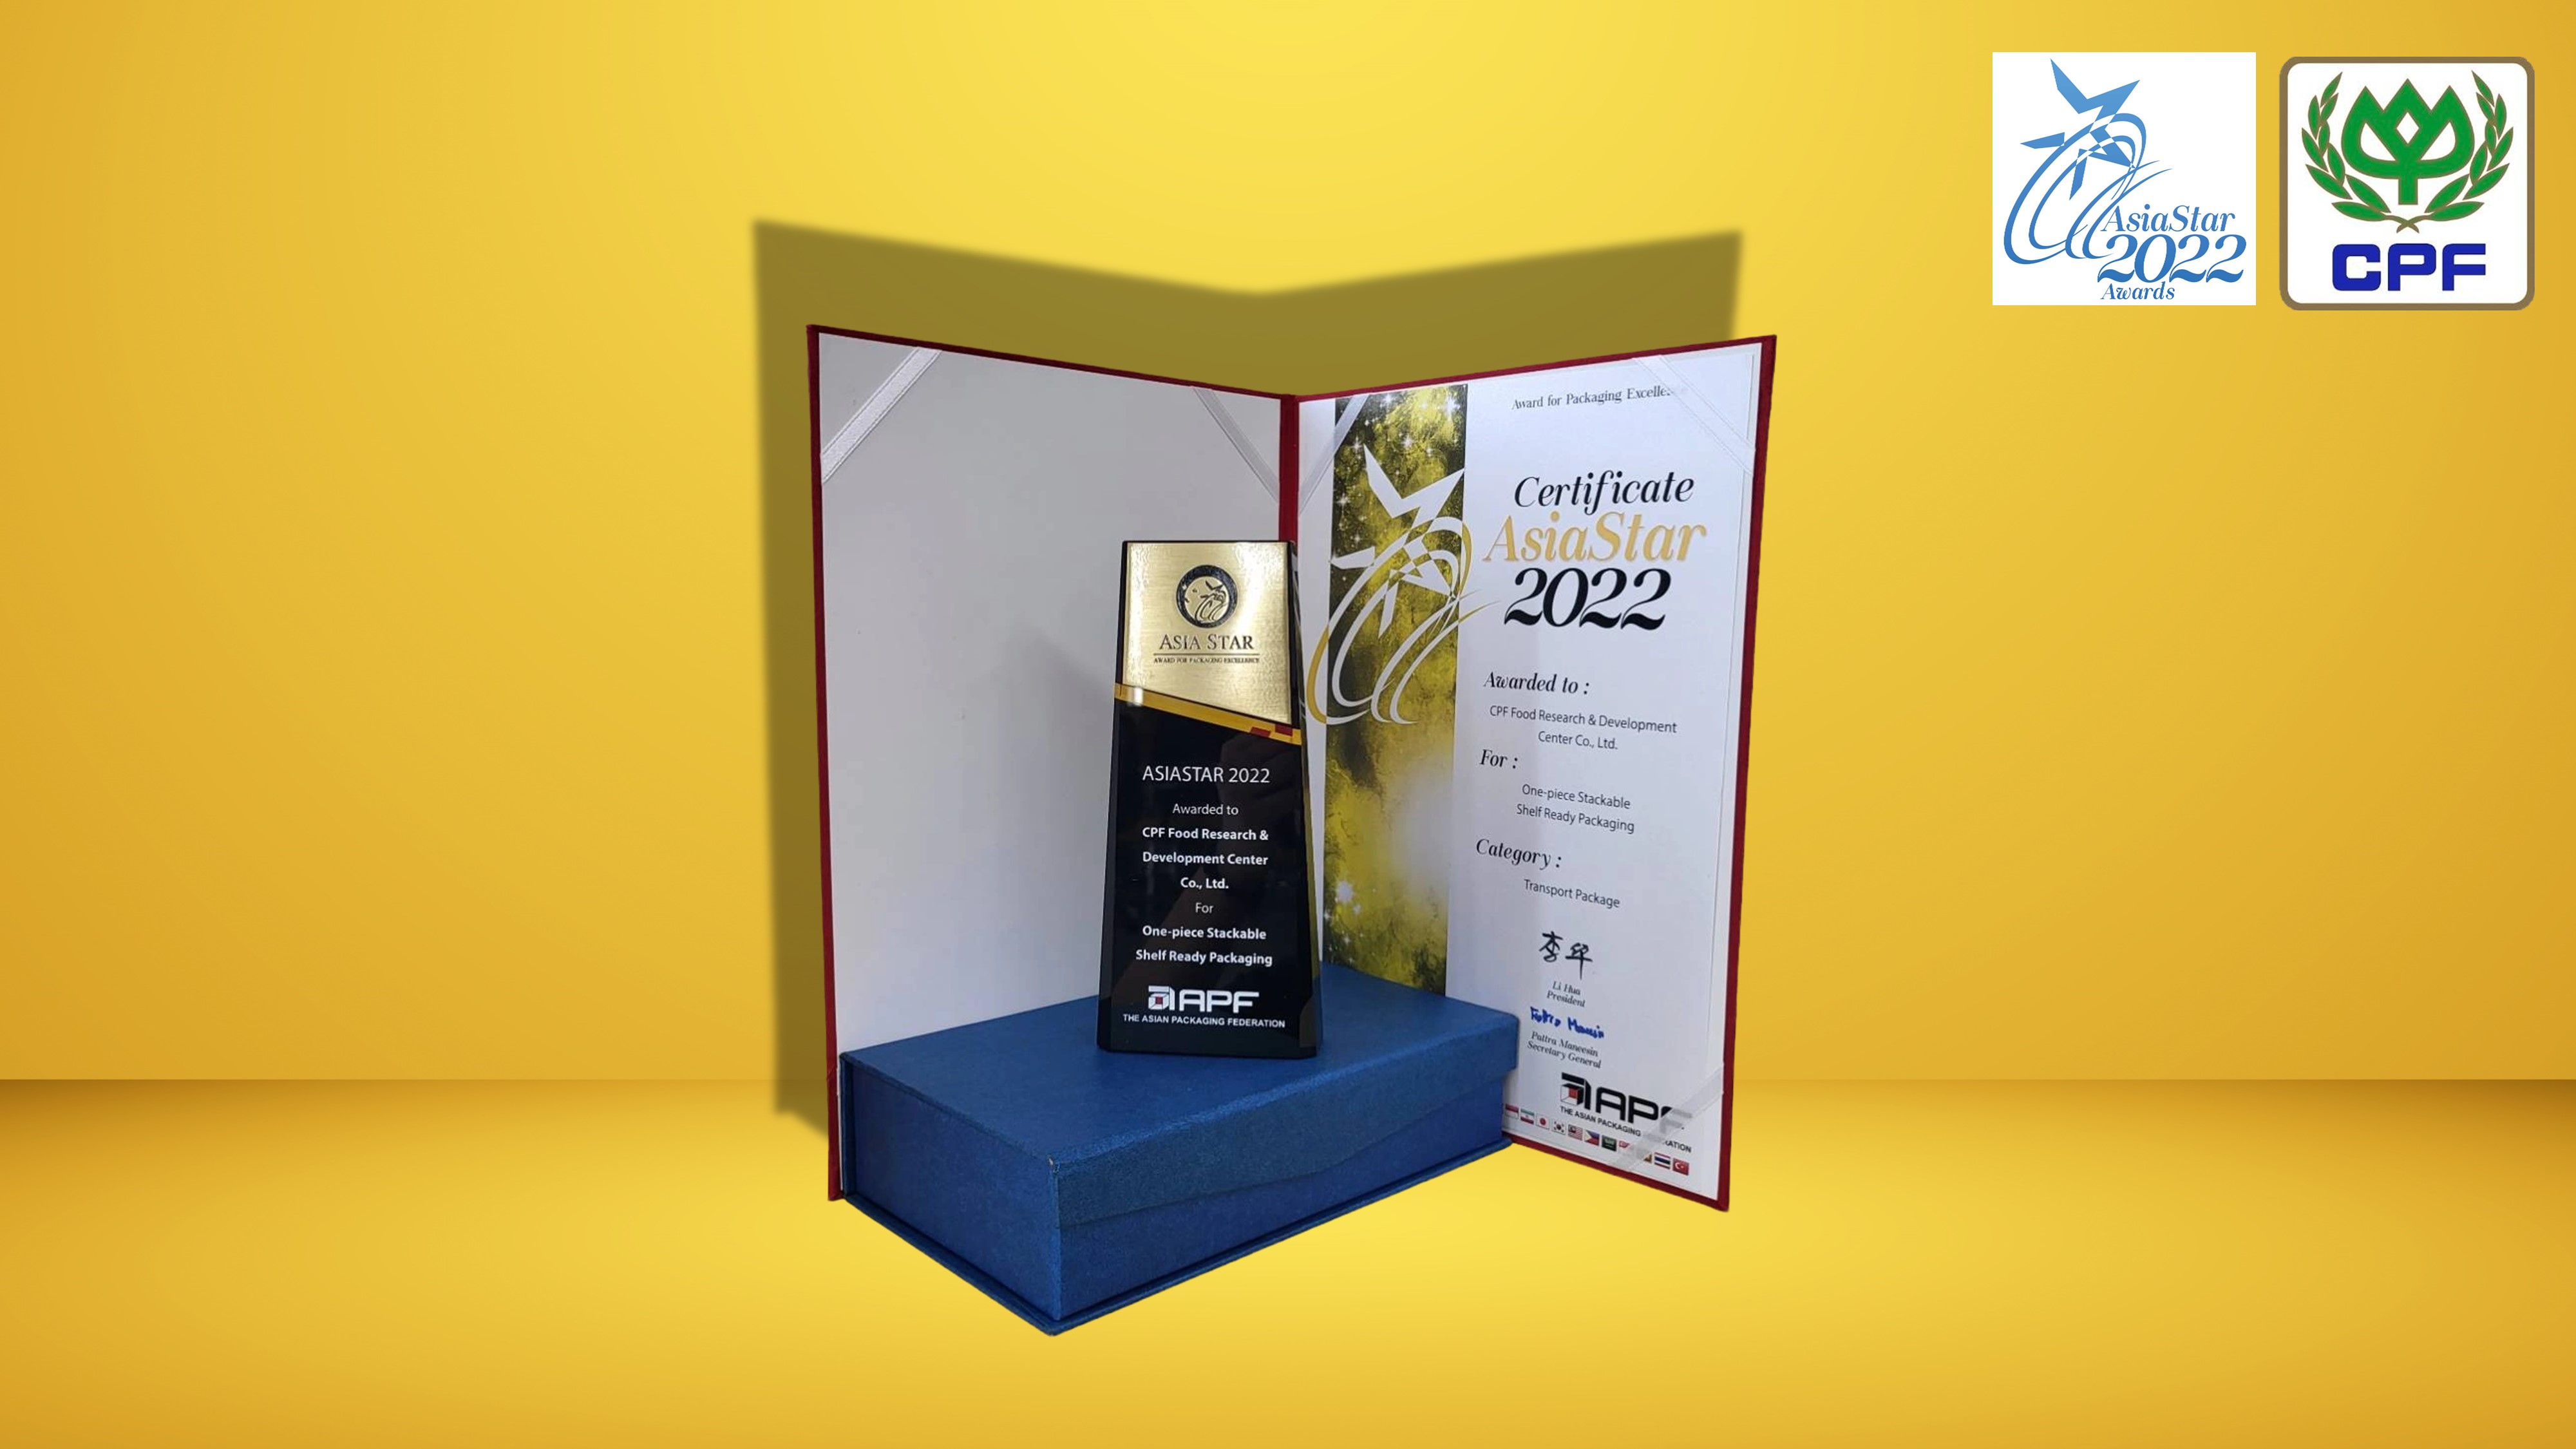 ซีพีเอฟ คว้ารางวัลระดับภูมิภาค AsiaStar Packaging Awards  สร้างสรรค์บรรจุภัณฑ์อาหารเป็นมิตรต่อสิ่งแวดล้อม